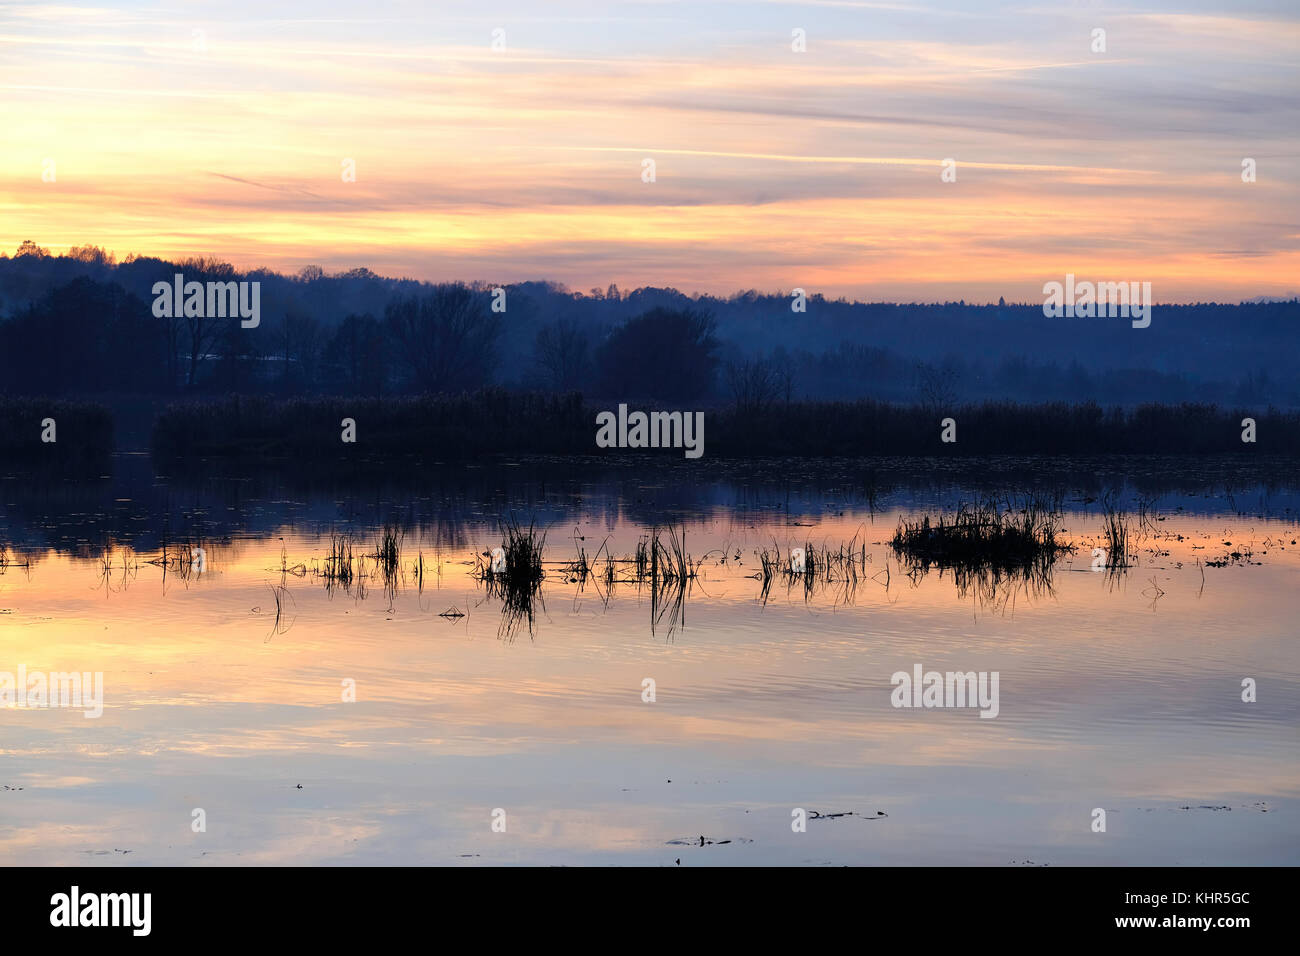 Kamienna River, Starachowice, Swietokrzyskie Region, Poland Stock Photo